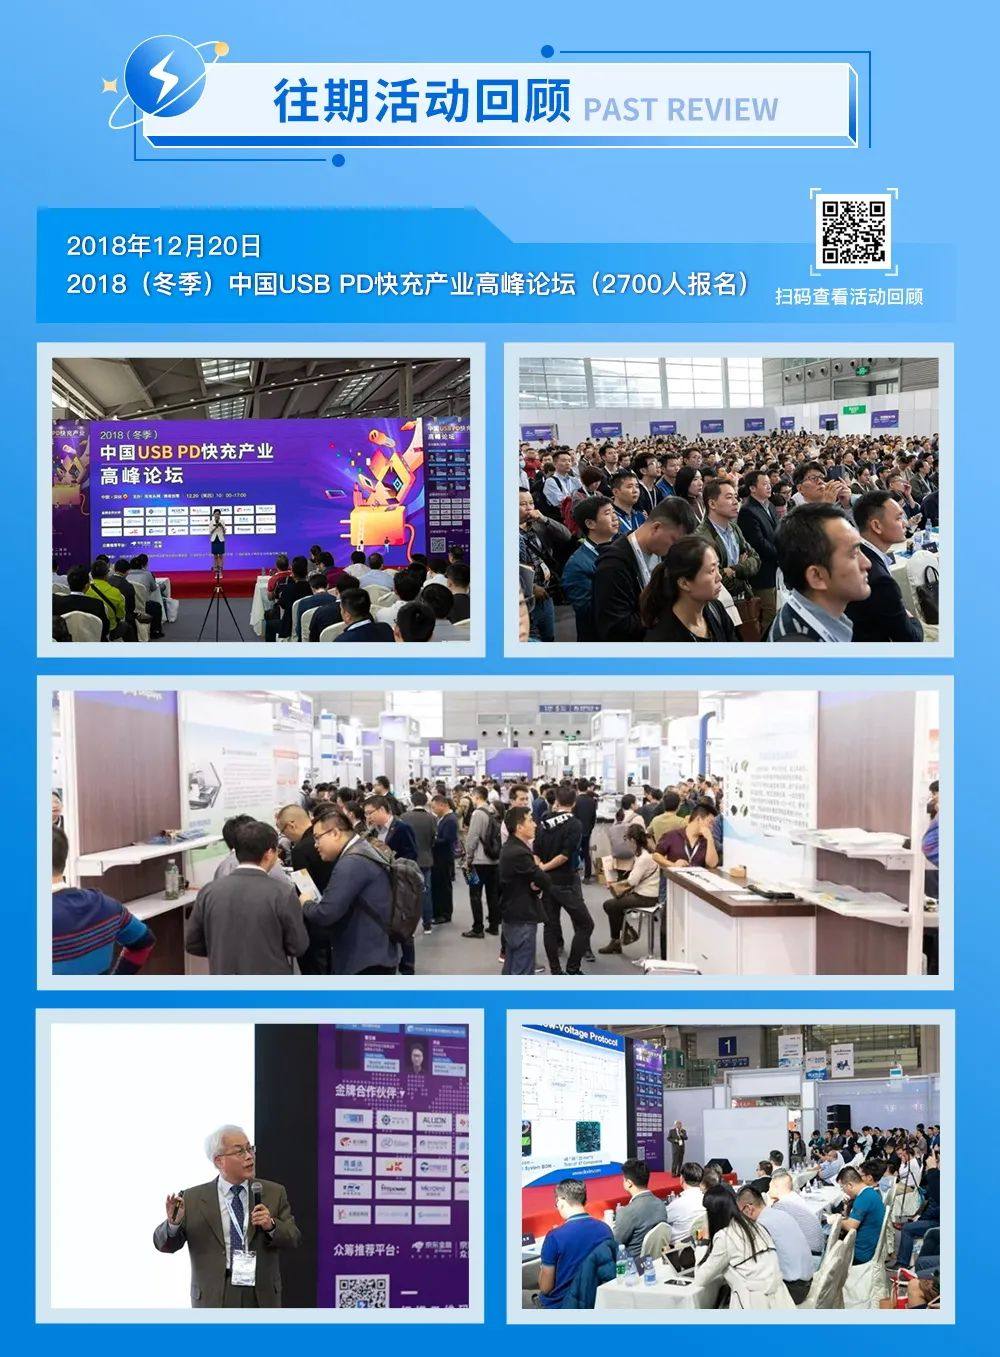 2022（冬季）USB PD&Type-C亚洲大会参会邀请-亚洲充电展